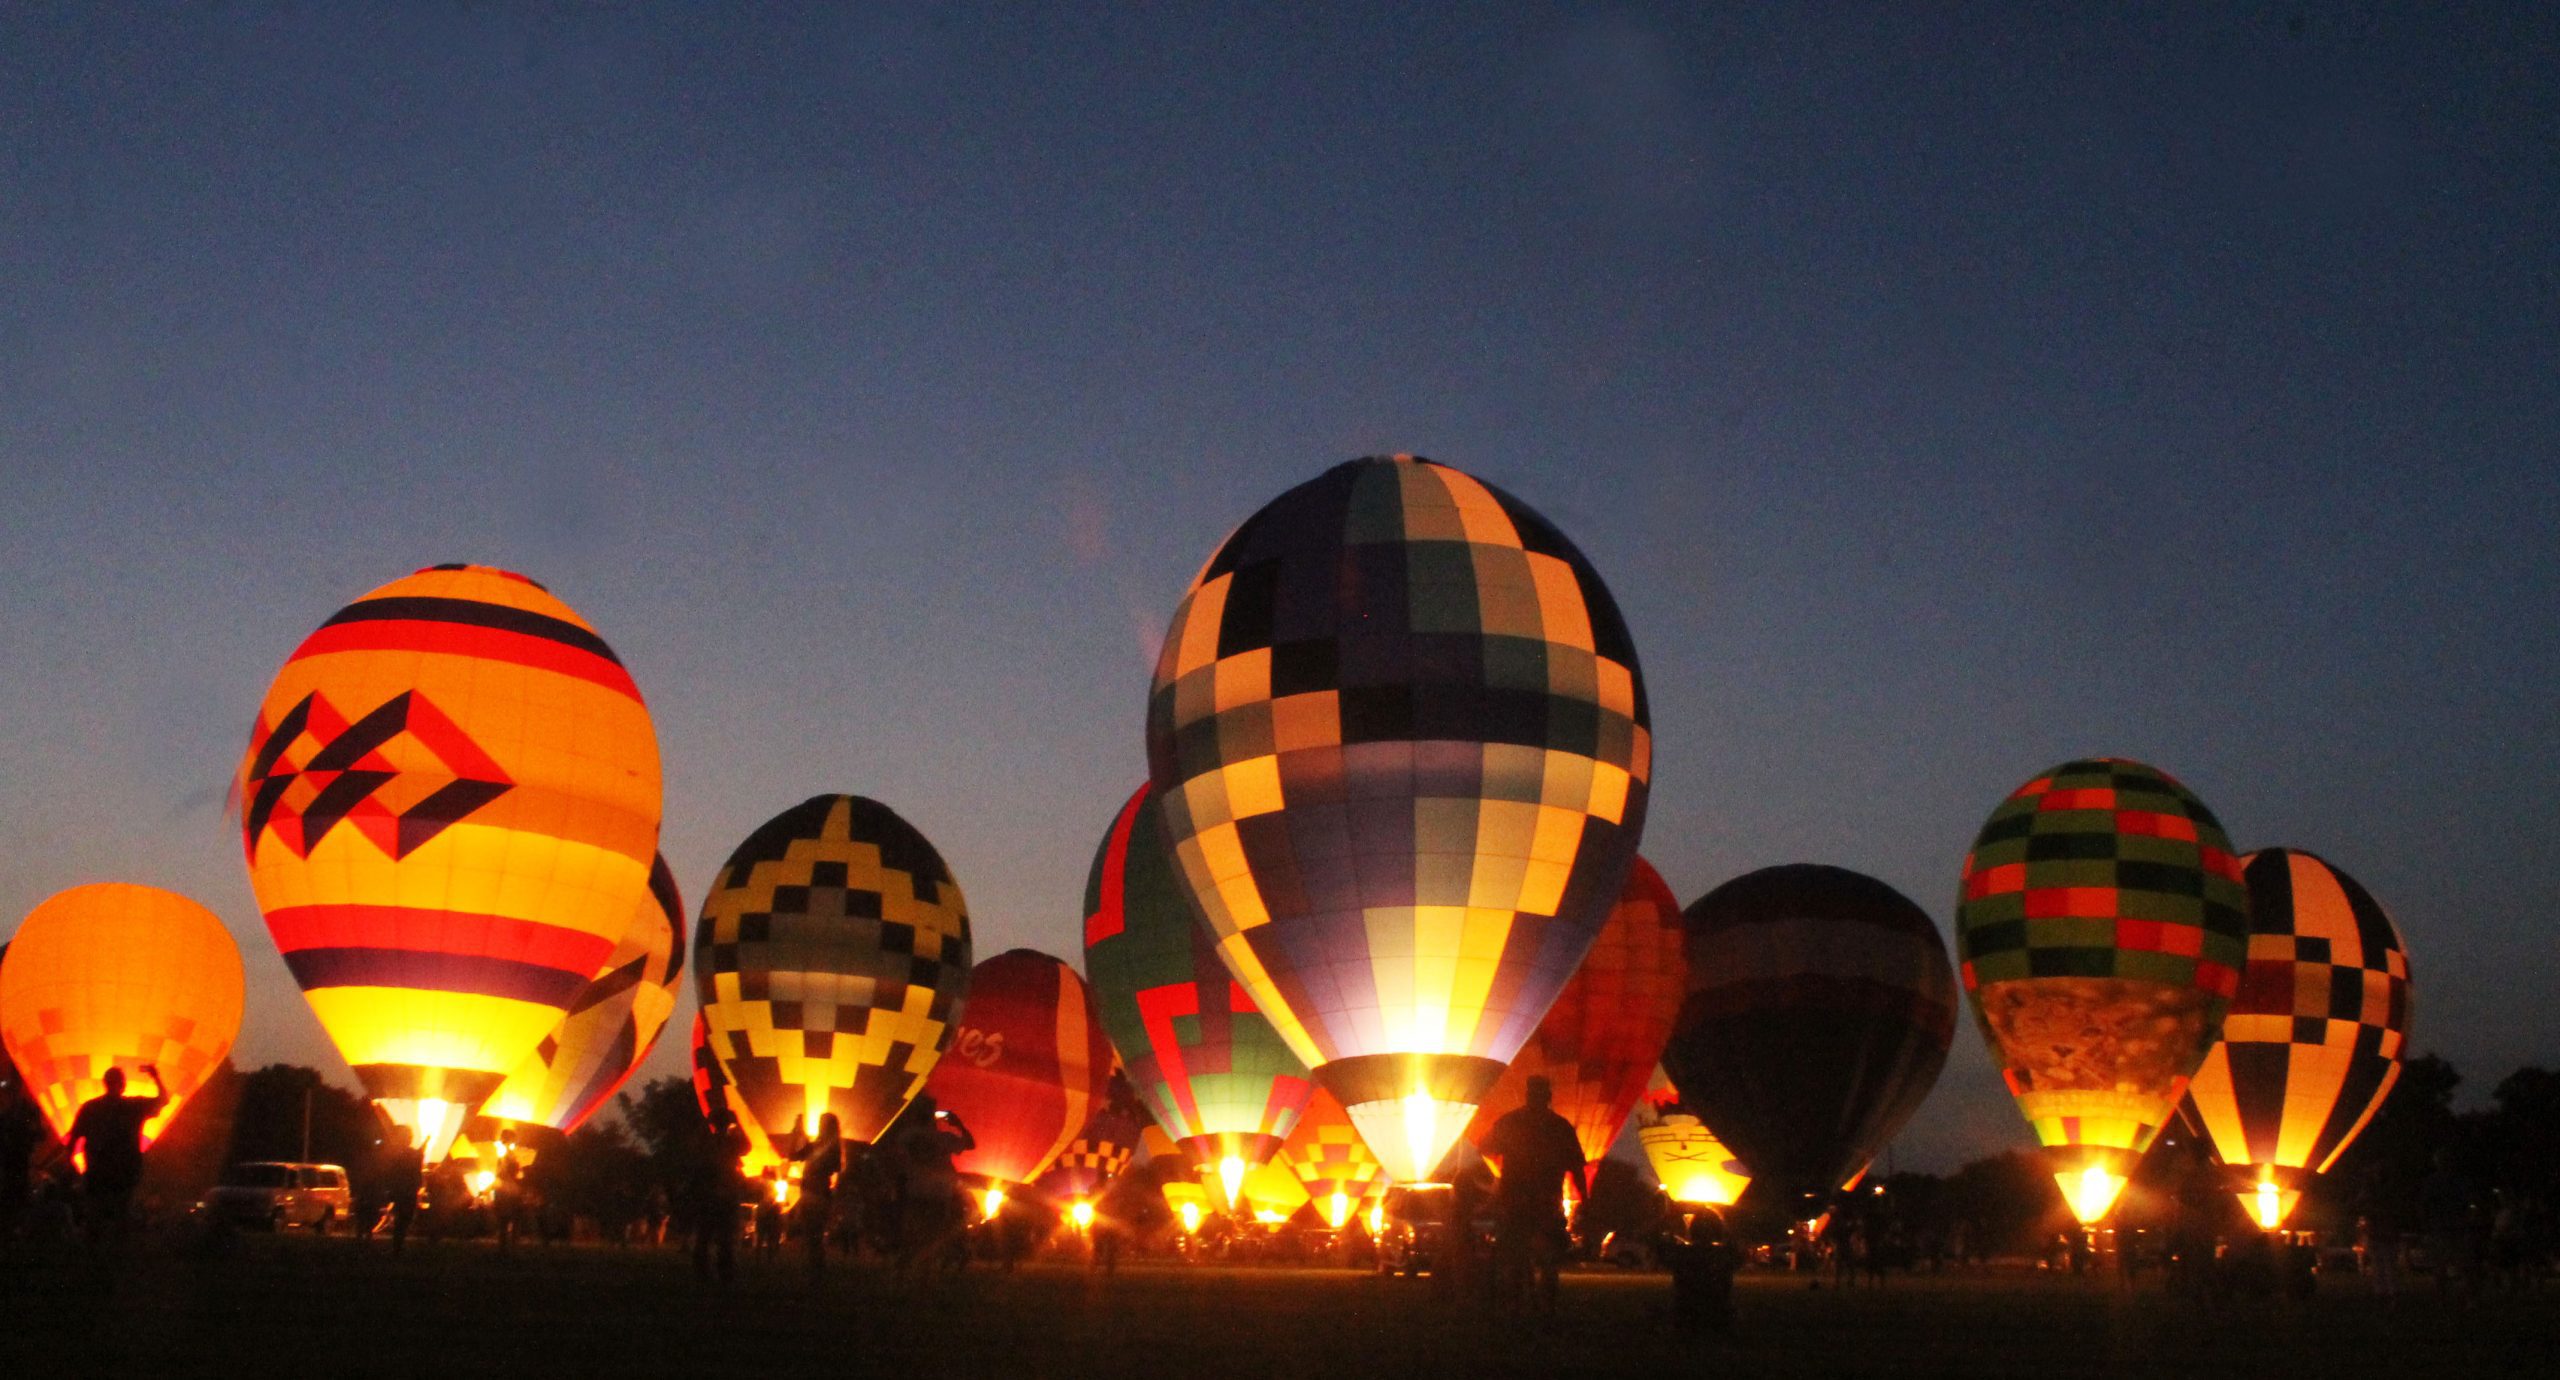 Hot air balloon festival in Shreveport